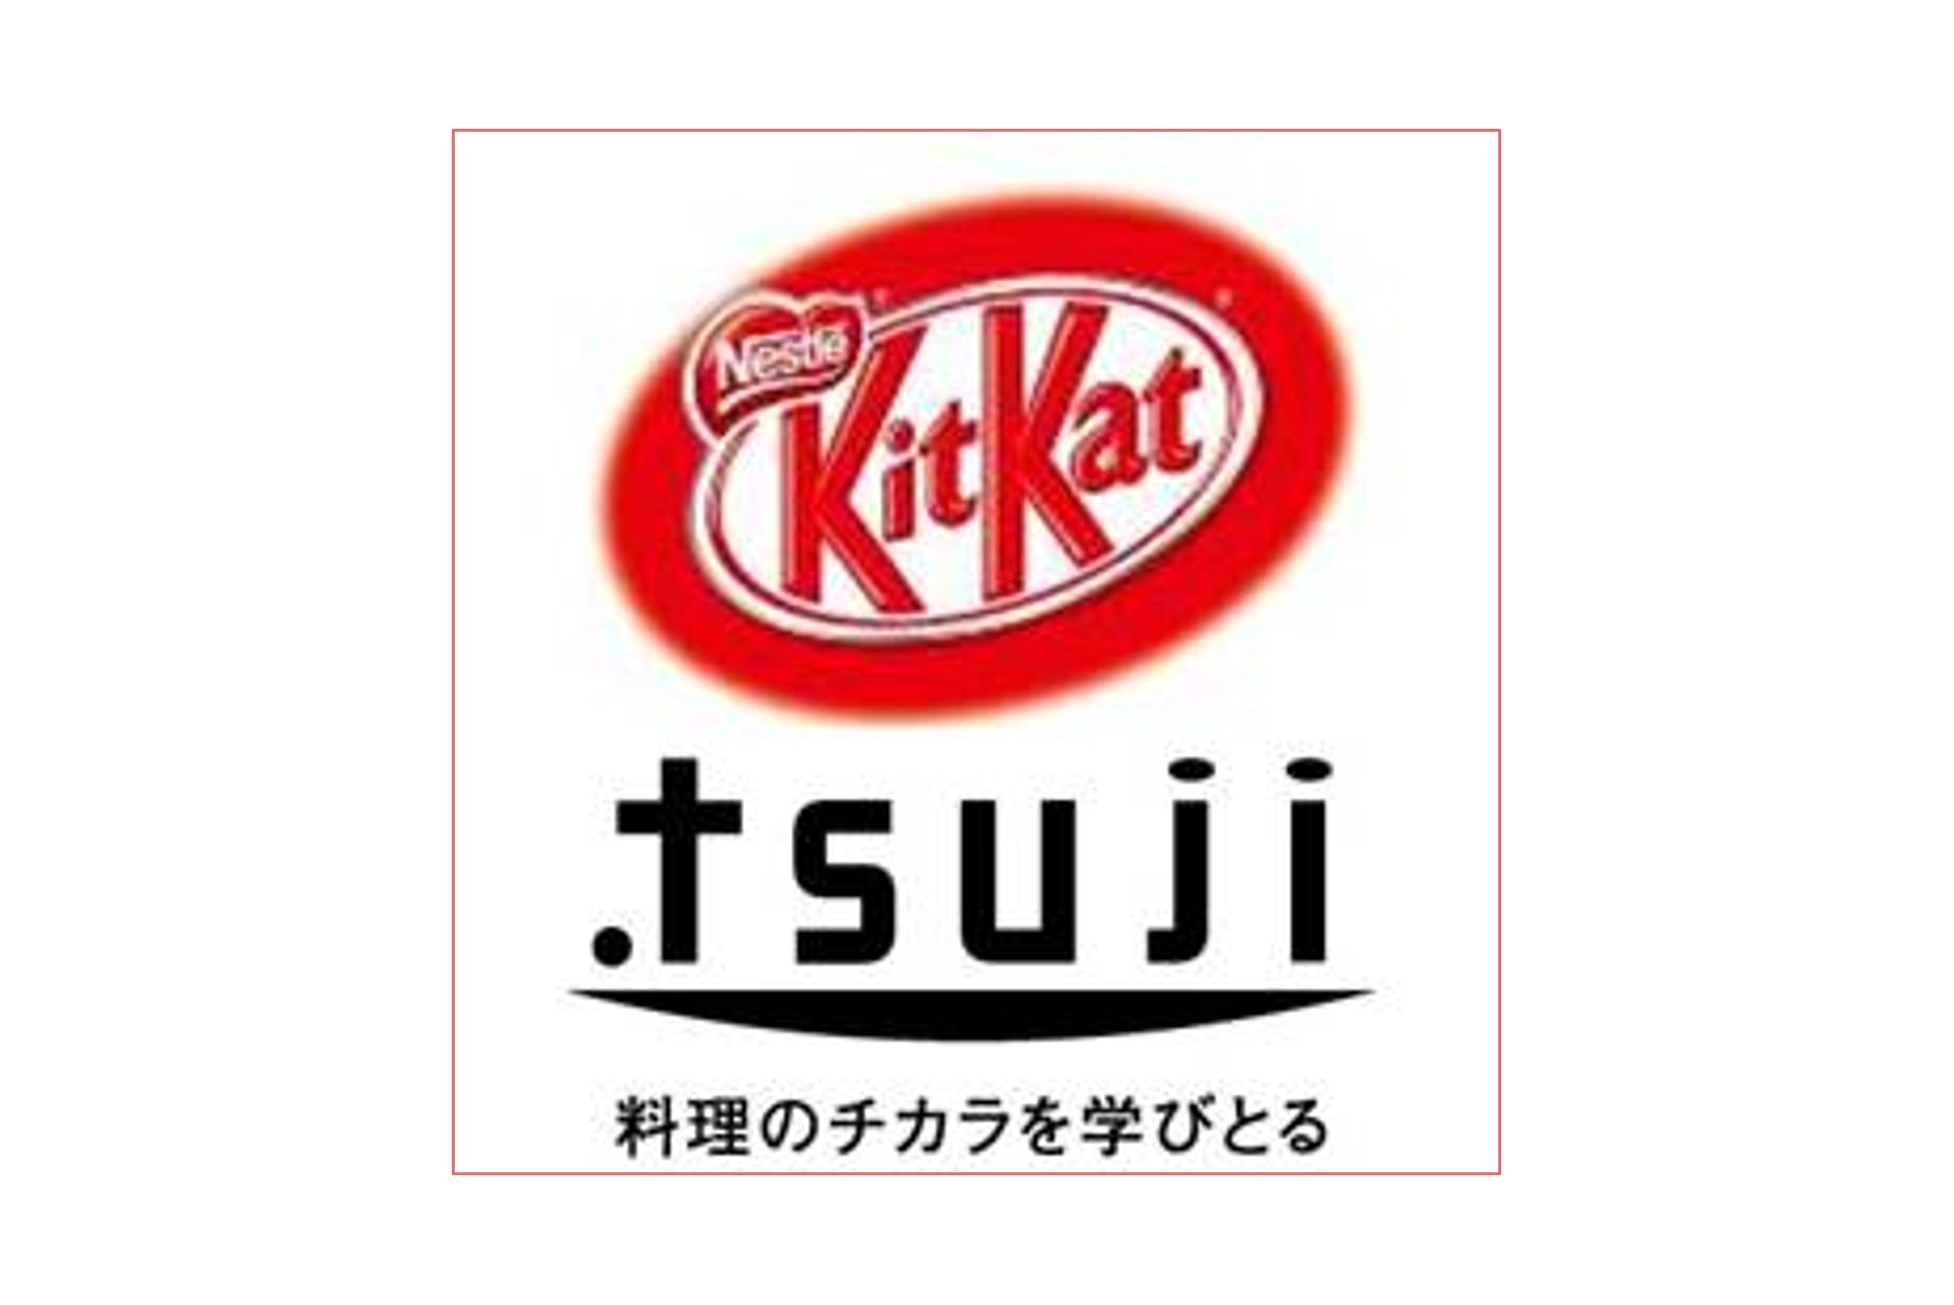 ネスレ「キットカット ショコラトリー」×辻調グループ 新製品発売